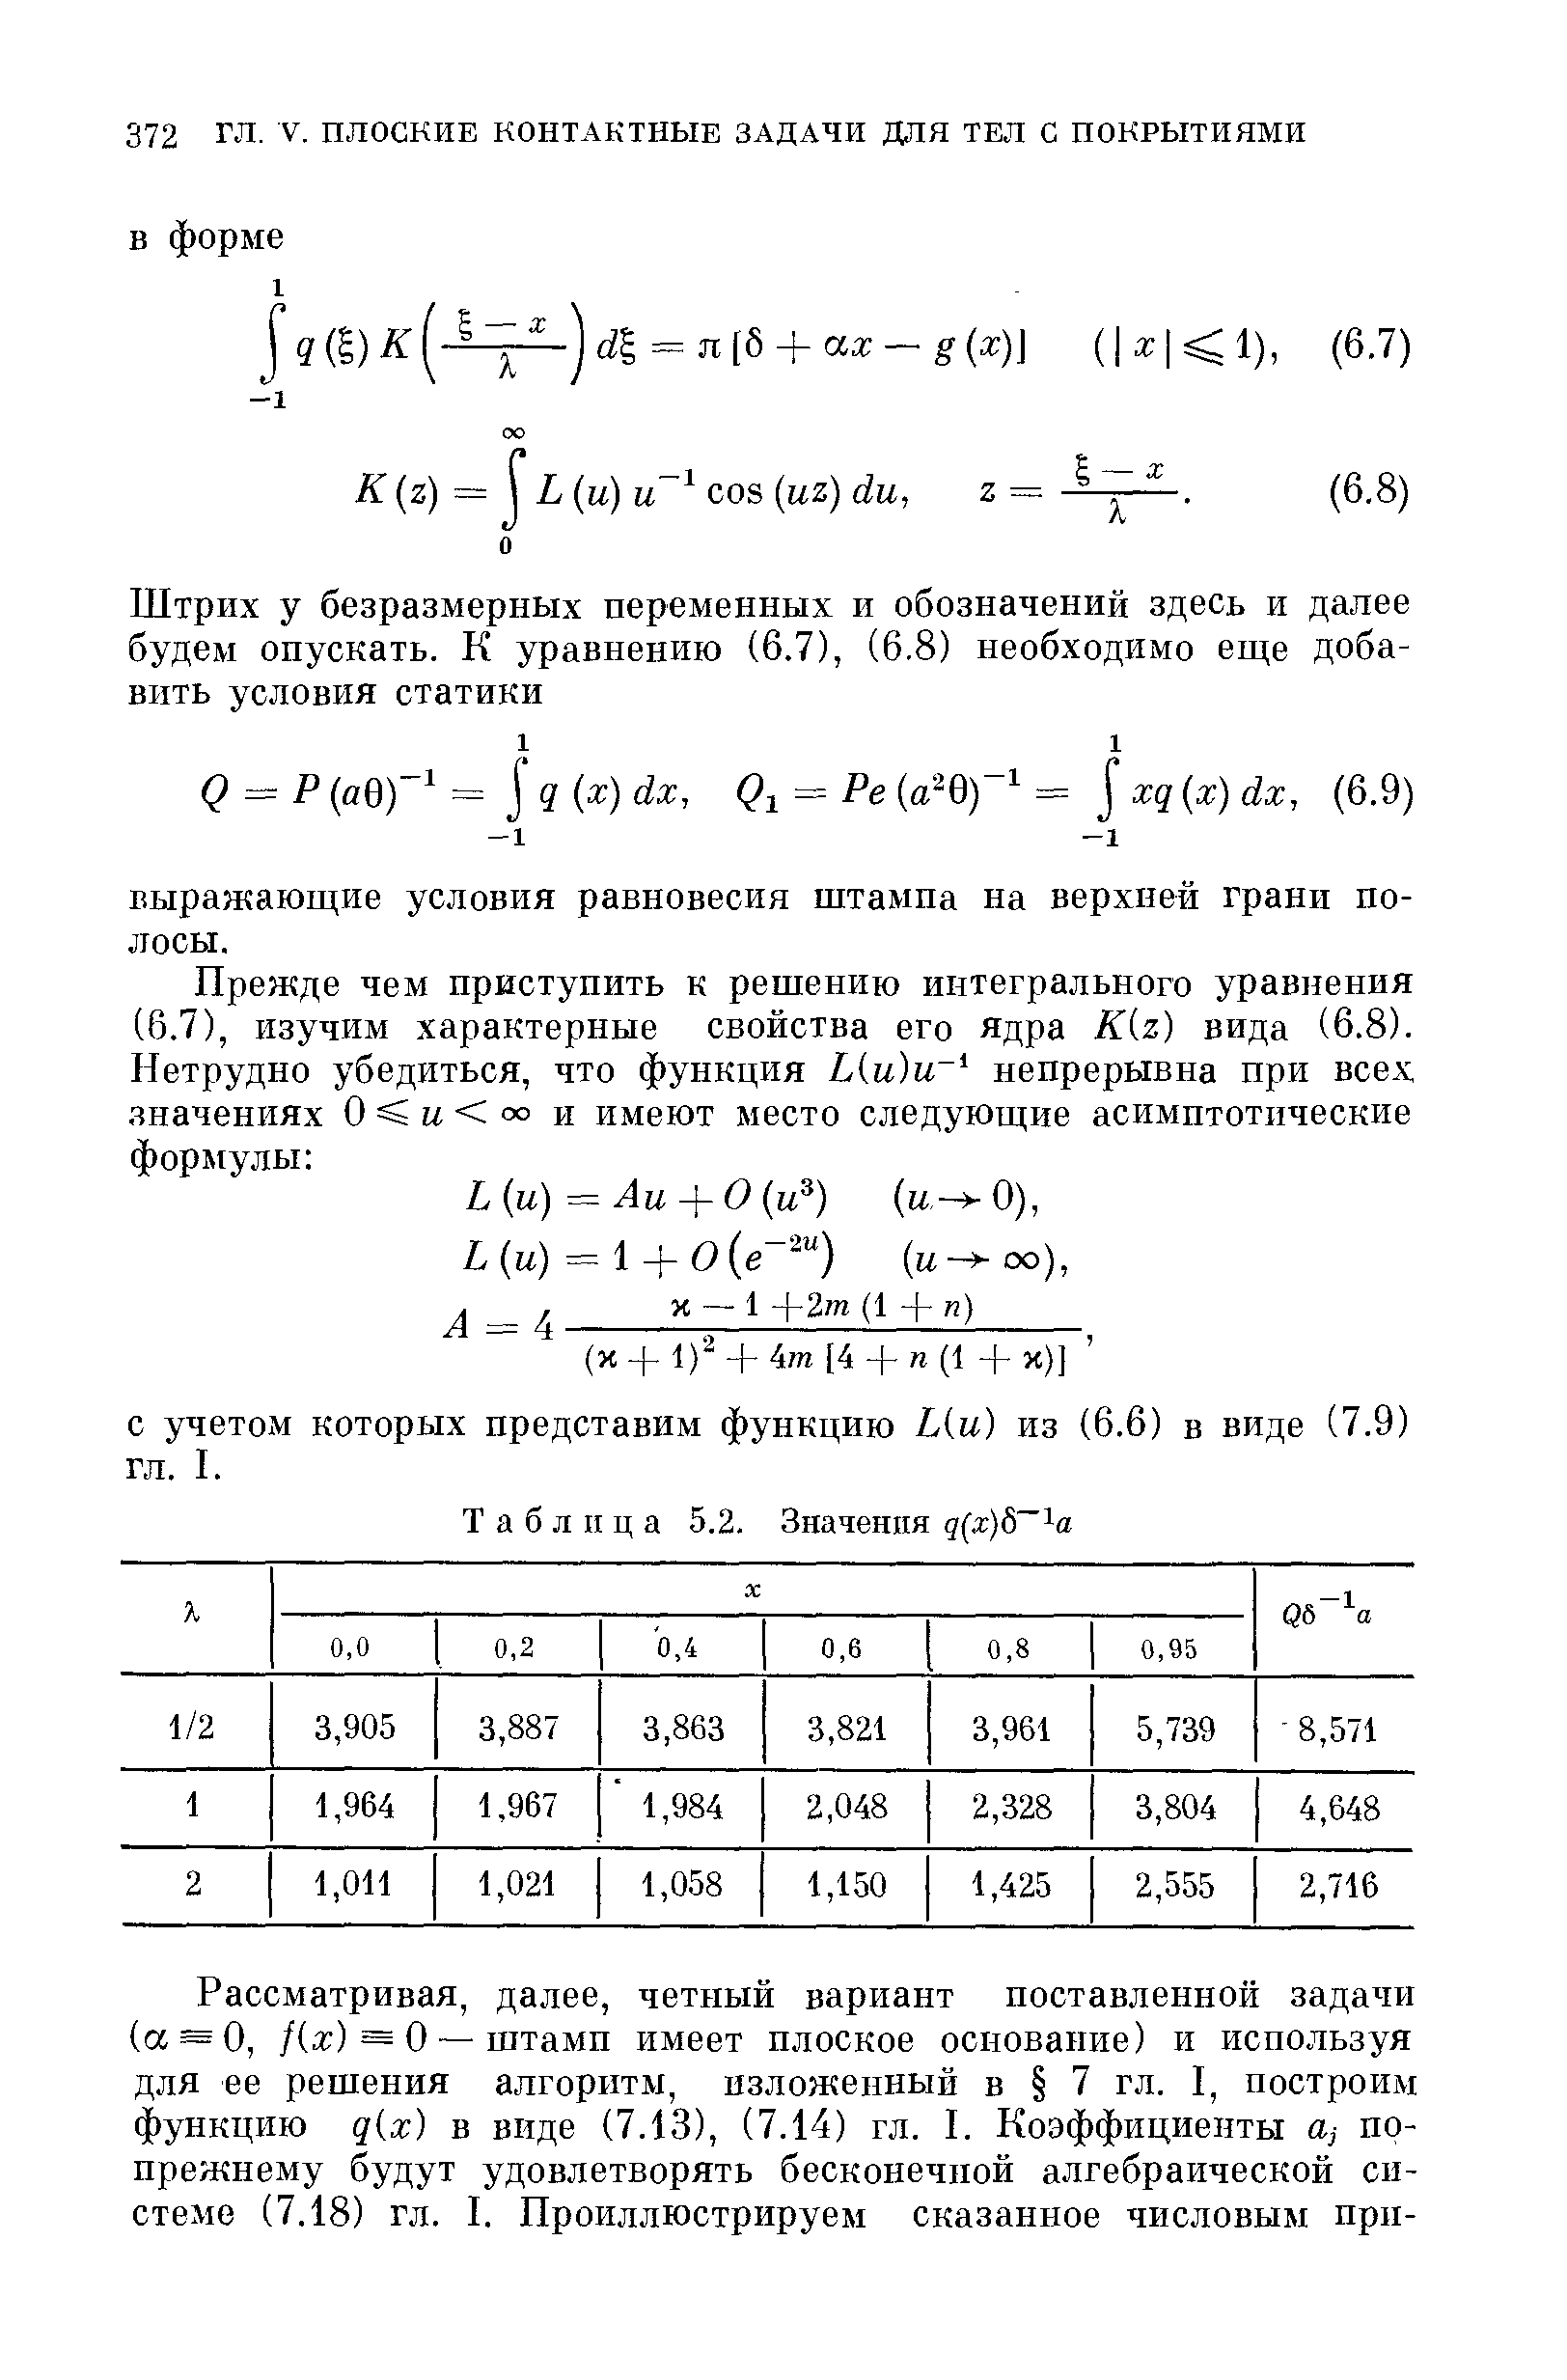 С учетом которых представим функцию Ь(и) из (6.6) в виде (7.9) гл. I.
